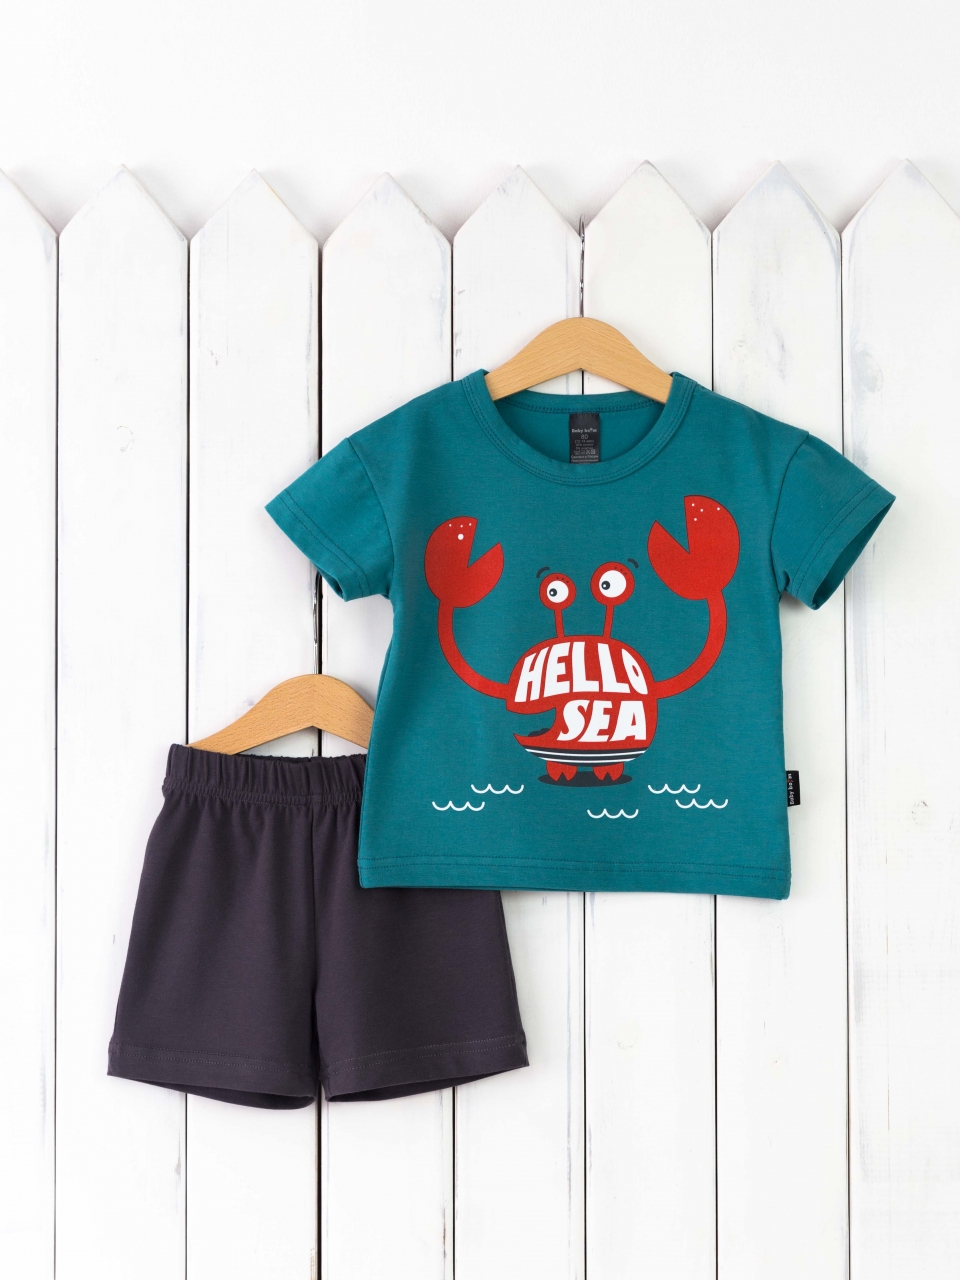 КД467/1-К Комплект р.92 футболка/морская волна+шорты графит Бэби Бум - Ижевск 